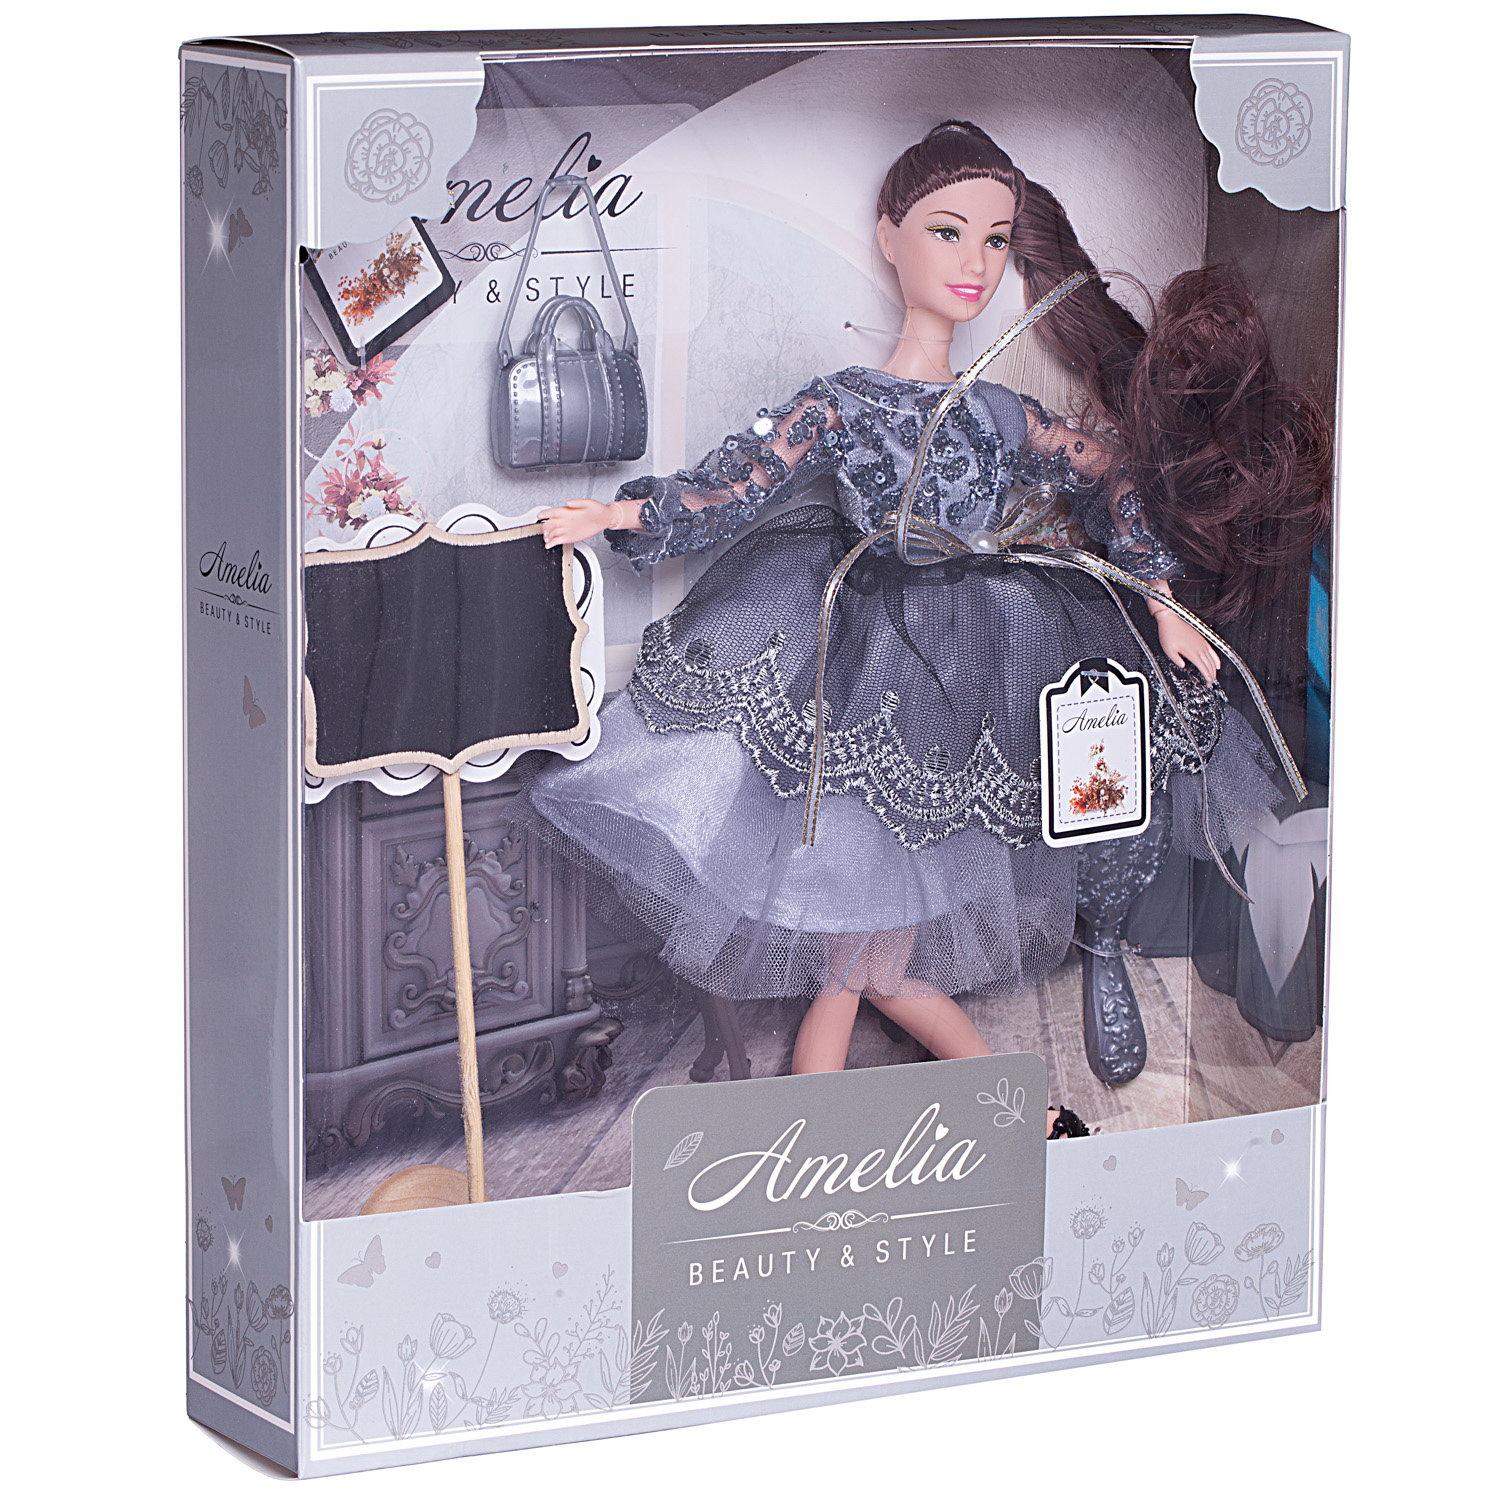 Кукла ABTOYS Роскошь серебра в платье с двухслойной юбкой серебристая сумка темные волосы 30см PT-01630 - фото 6